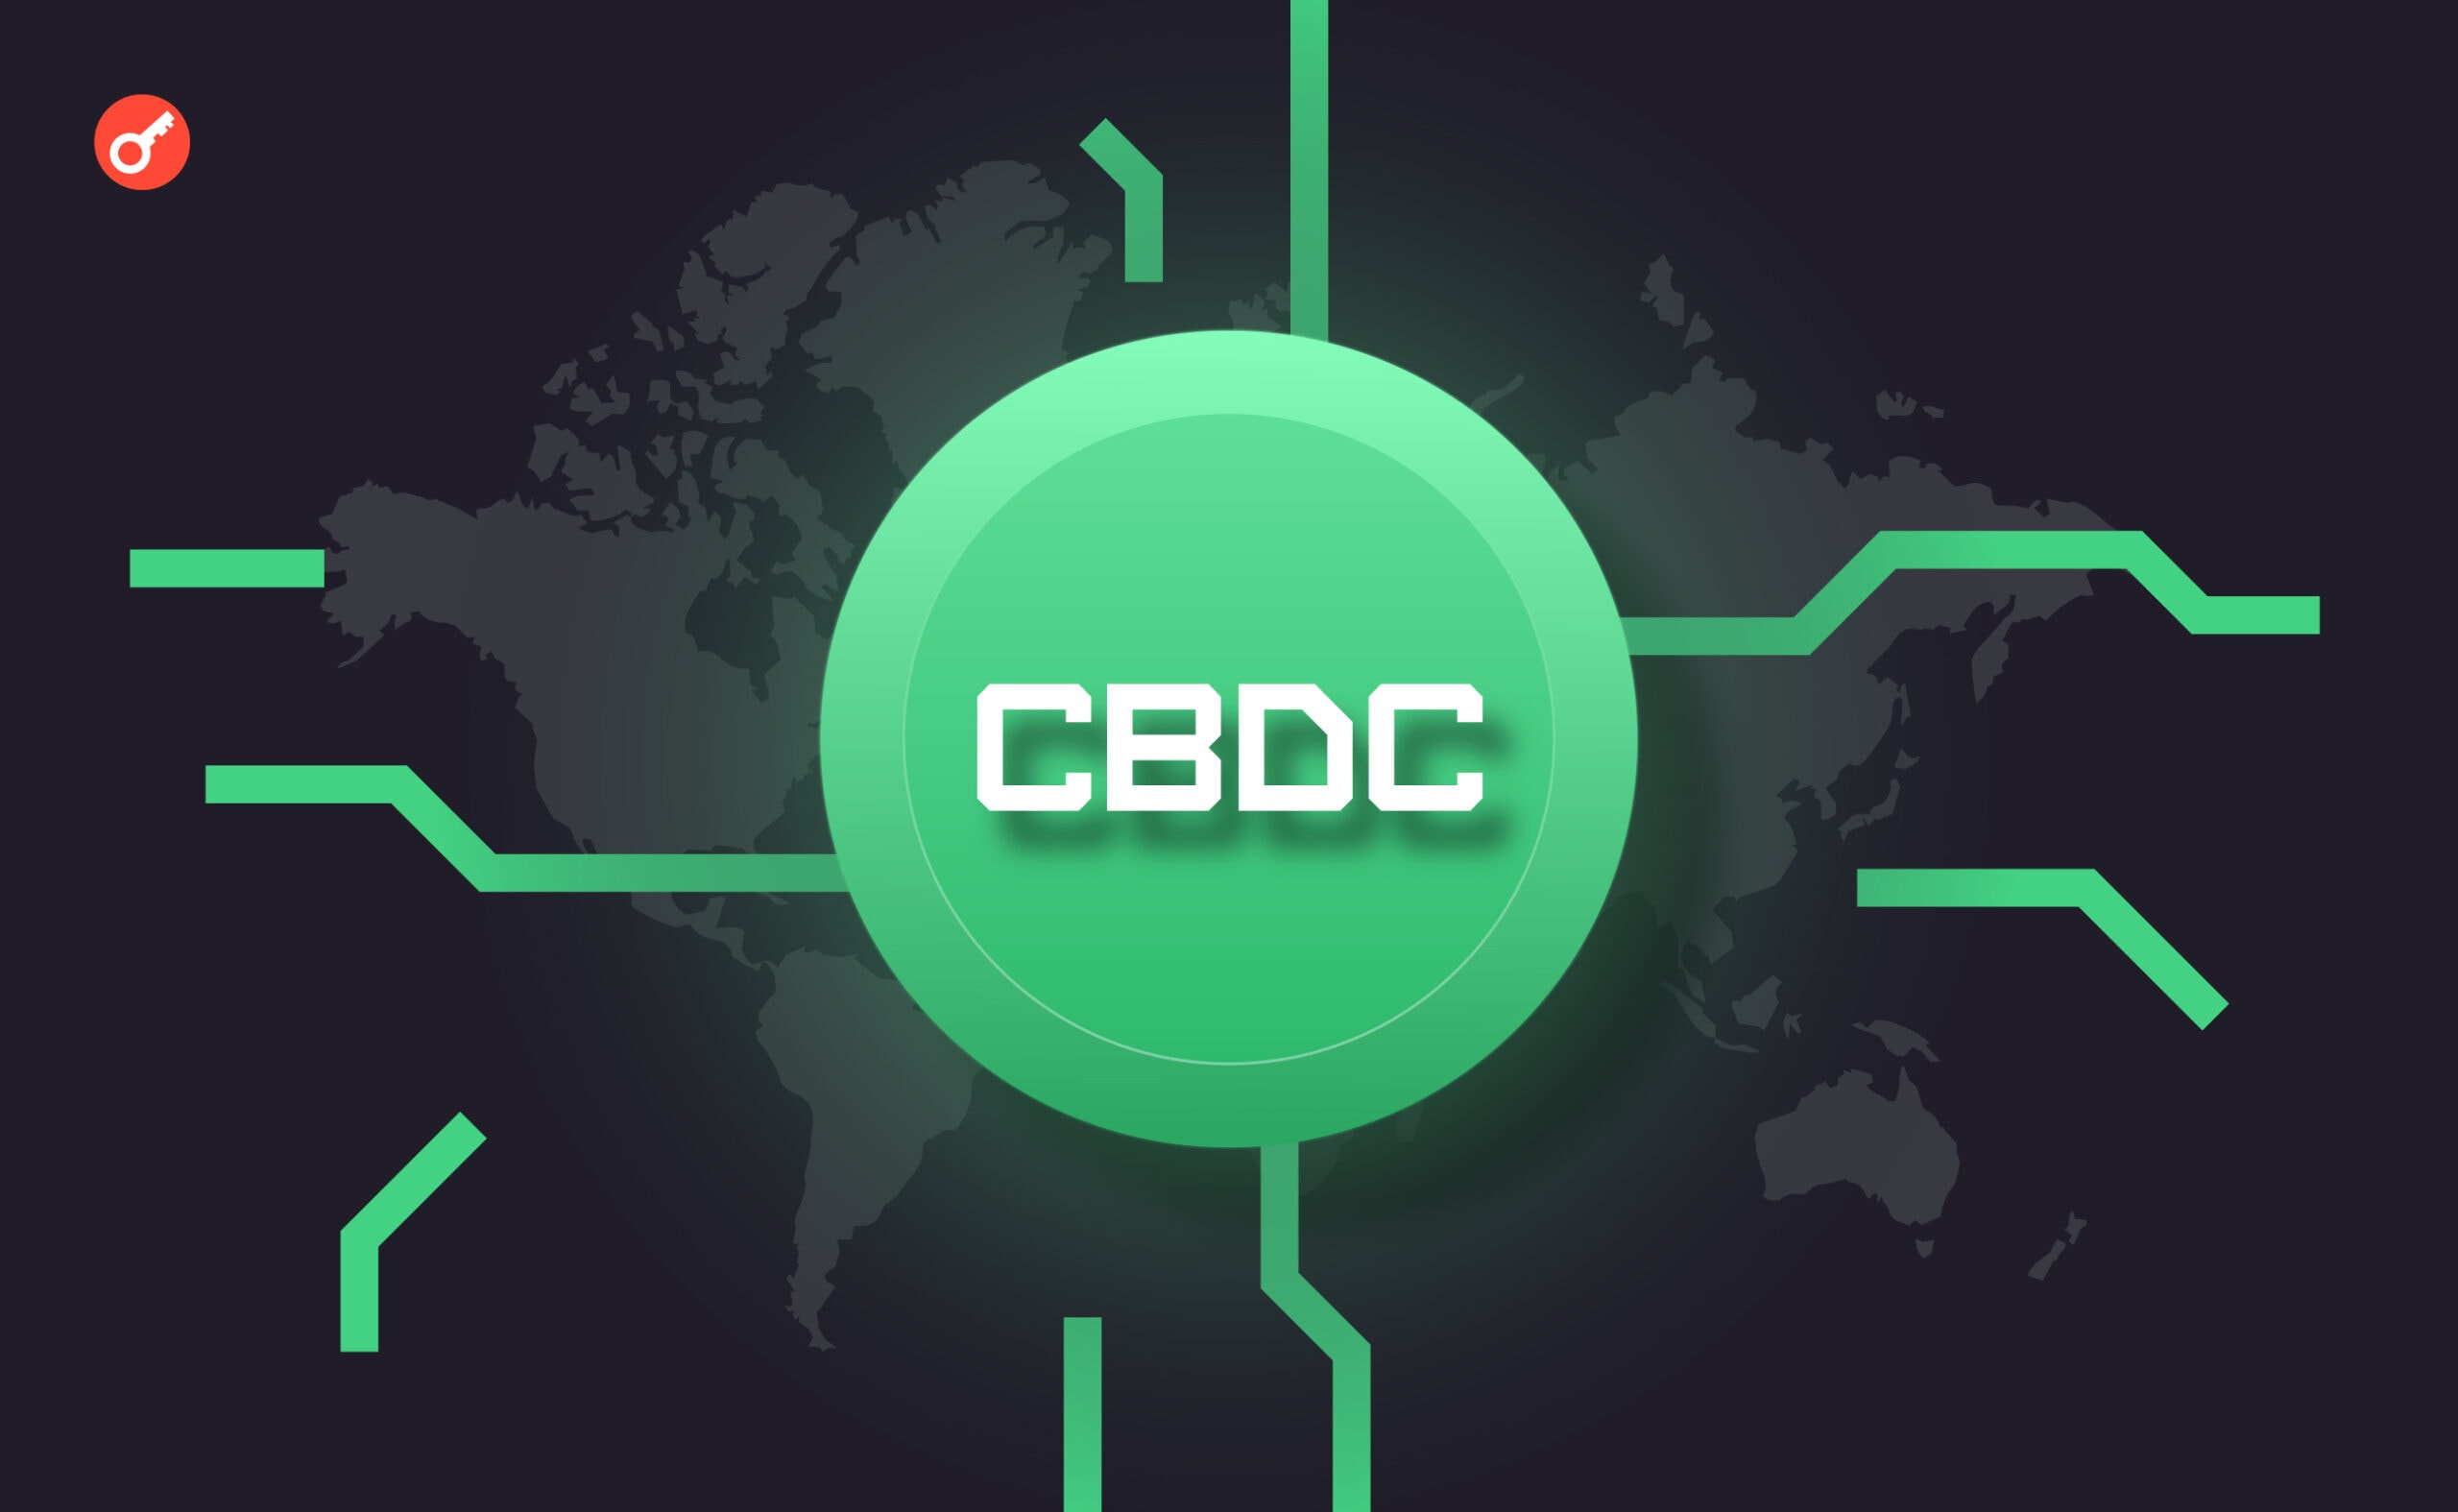 «Более 130 стран работают над CBDC. Это 98% мирового ВВП» — отчет Atlantic Council. Заглавный коллаж новости.